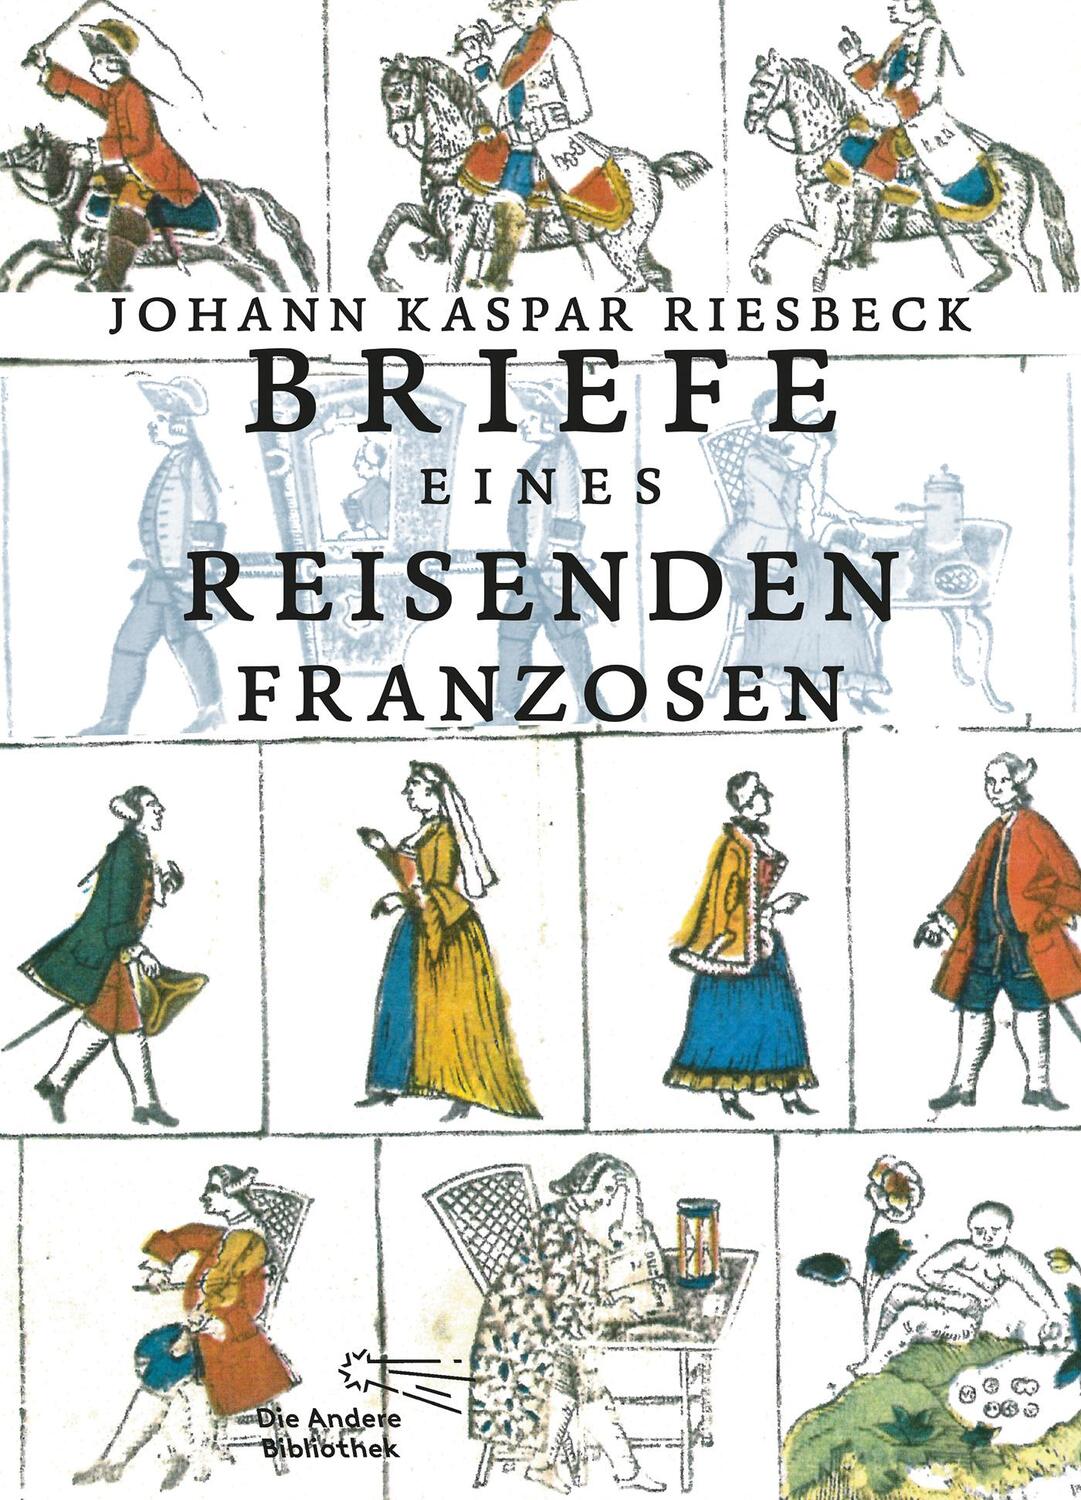 Briefe eines reisenden Franzosen - Riesbeck, Johann Kaspar